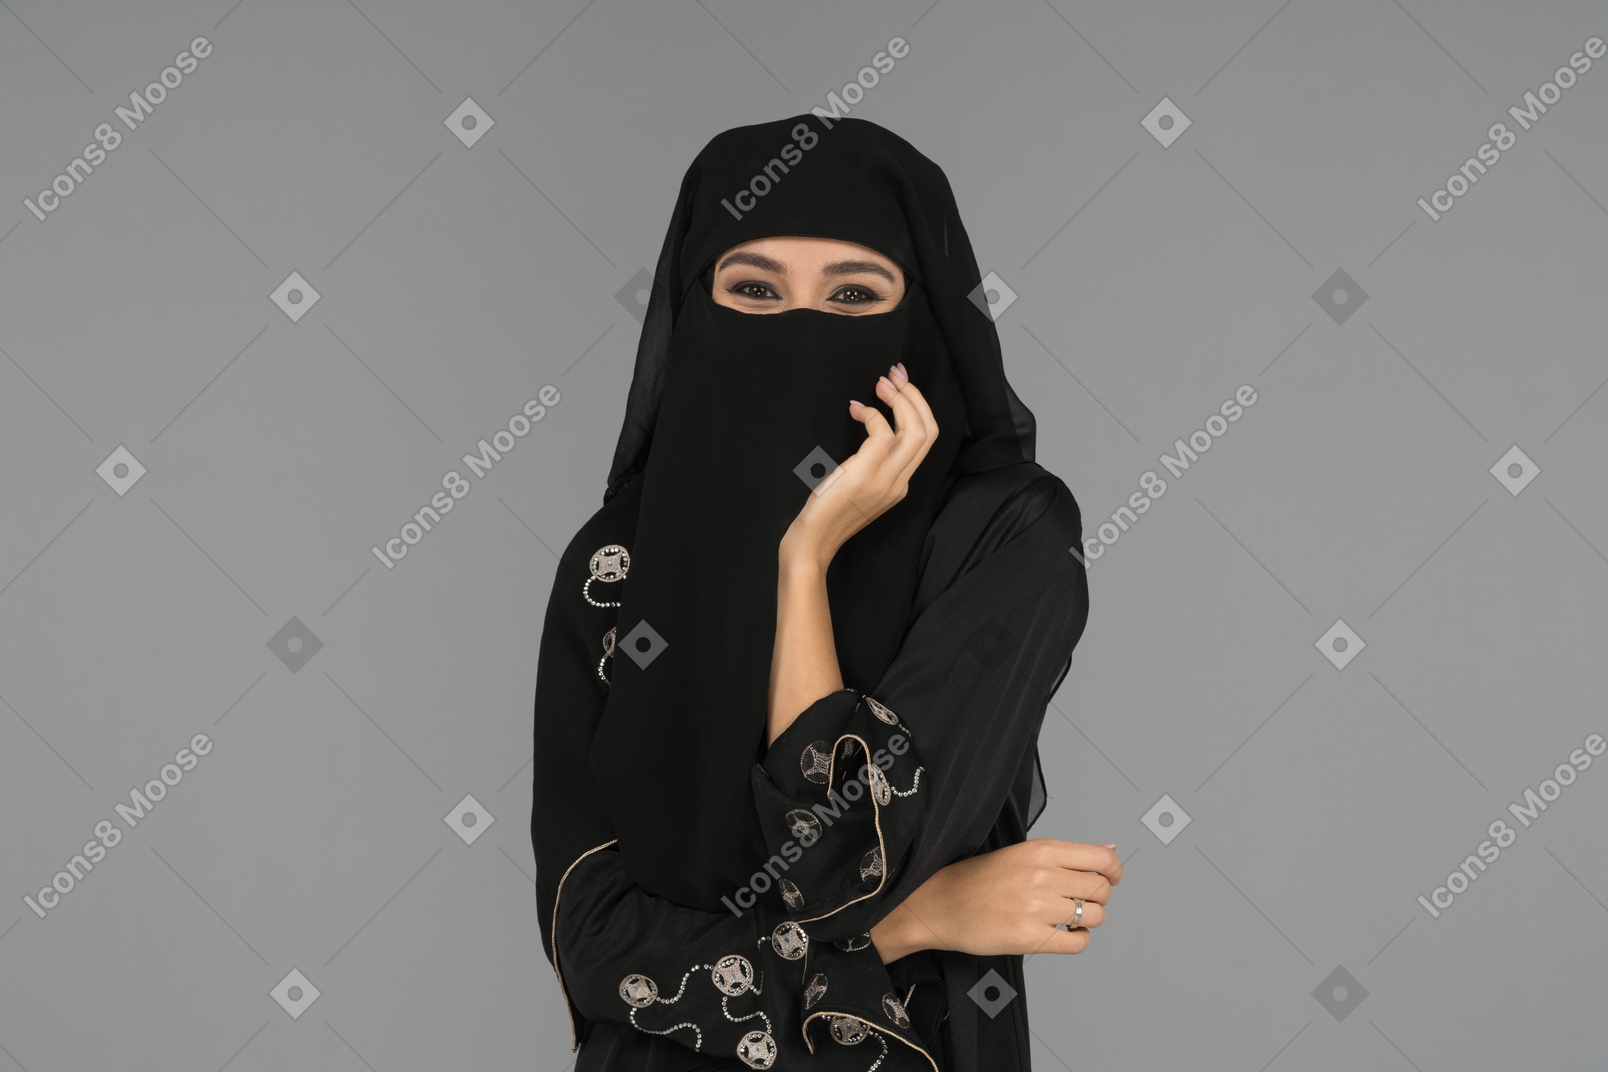 Una donna musulmana coperta che guarda l'obbiettivo